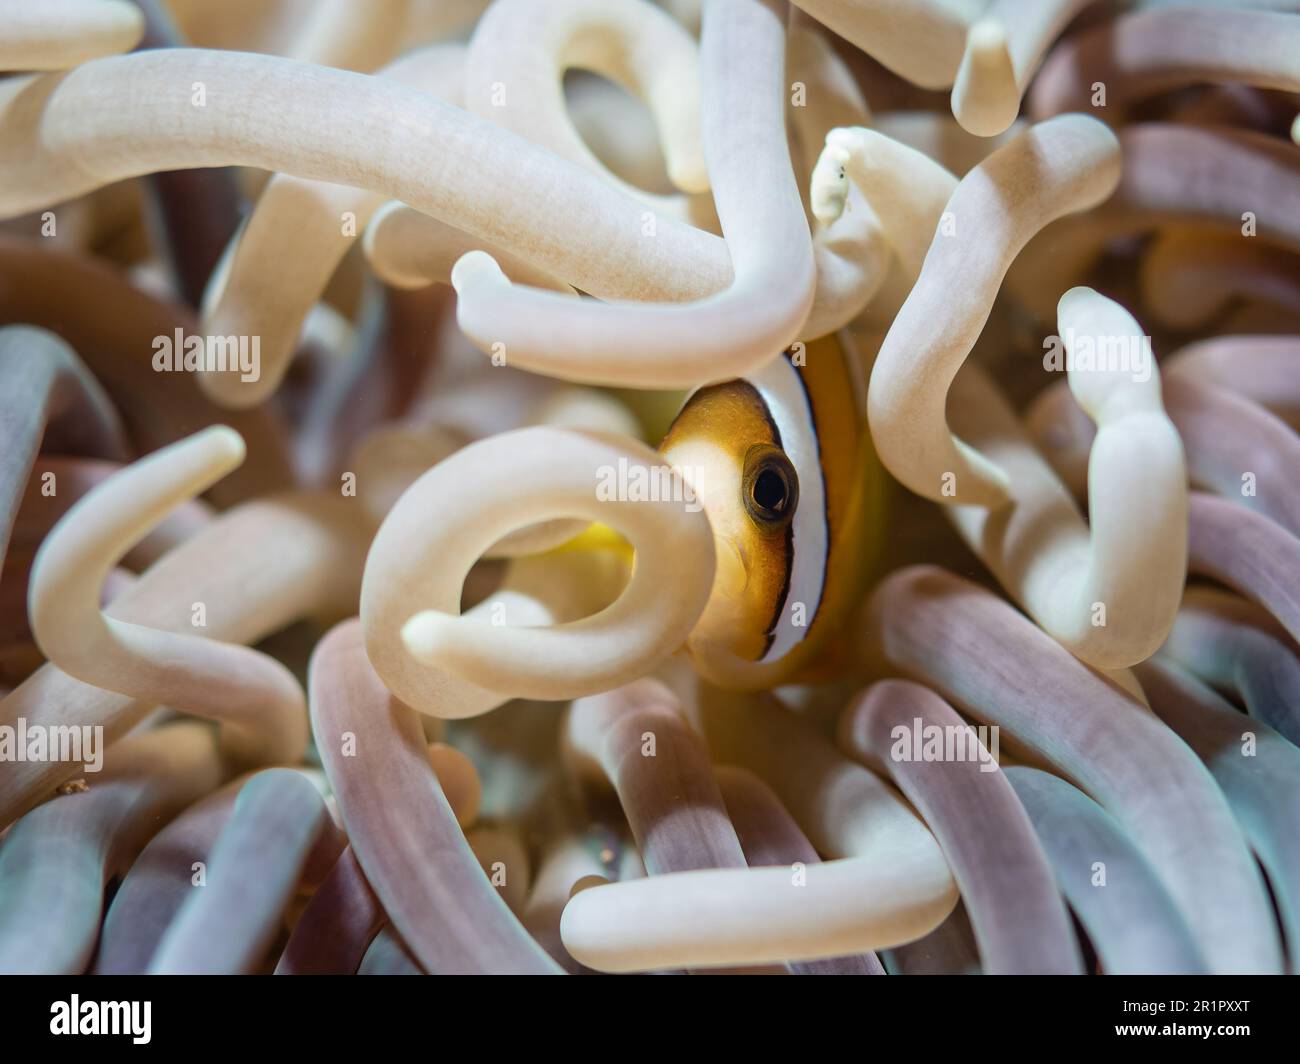 Anemonenfisch in einer Anemone, Anemone pesce in un anemone, Amphiprion clarkii, Clarks-Anemonenfisch, Lederanemone, Heteractis crispa, Anilao, Philipp Foto Stock